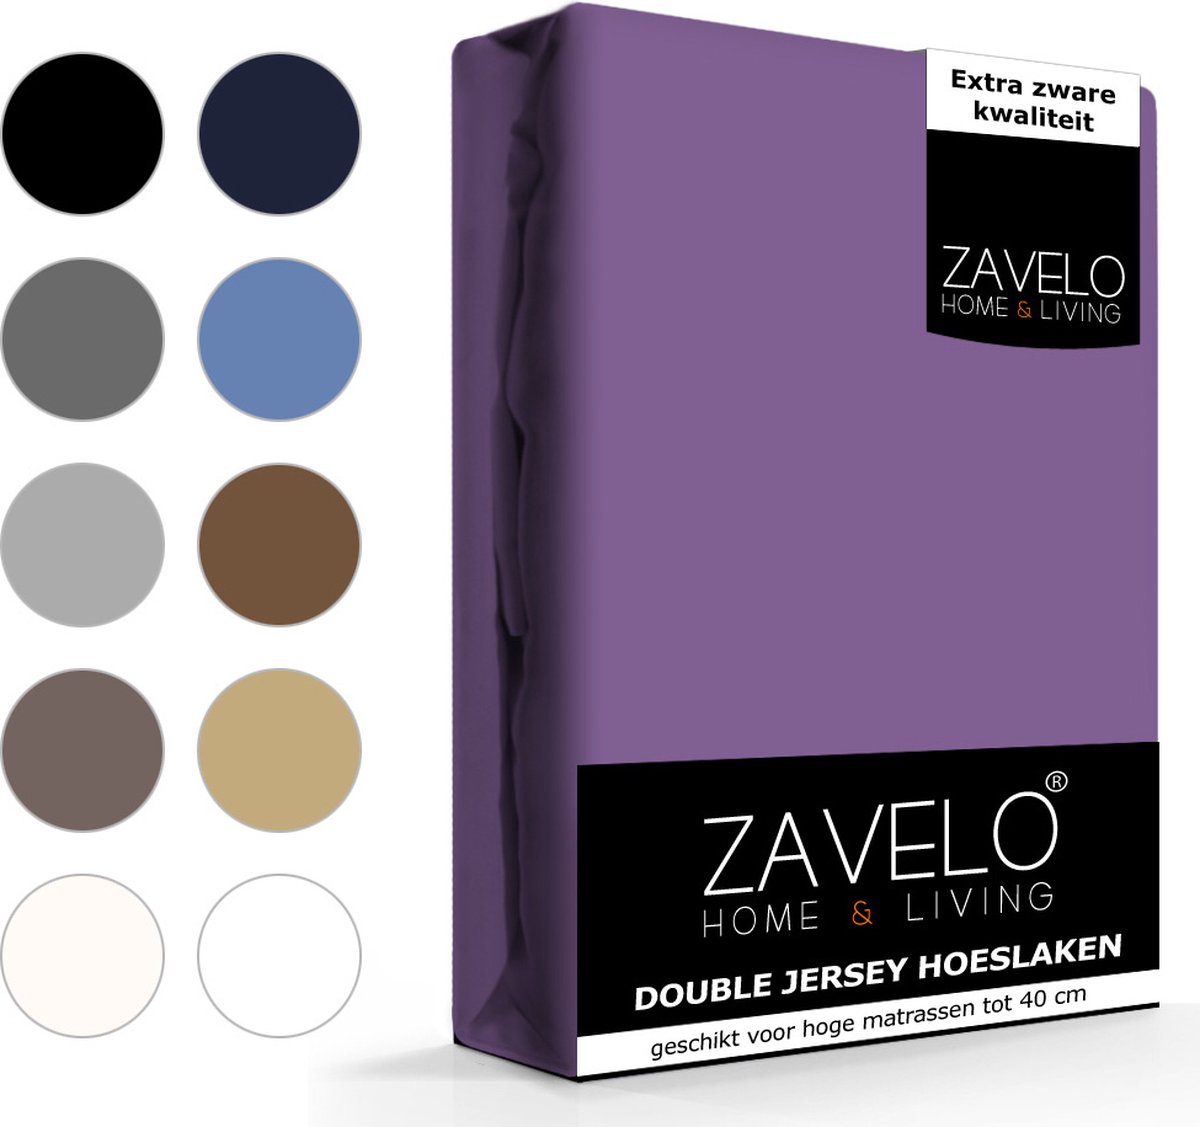 Slaaptextiel Zavelo Double Jersey Hoeslaken-lits-jumeaux (180x220 Cm) - Paars